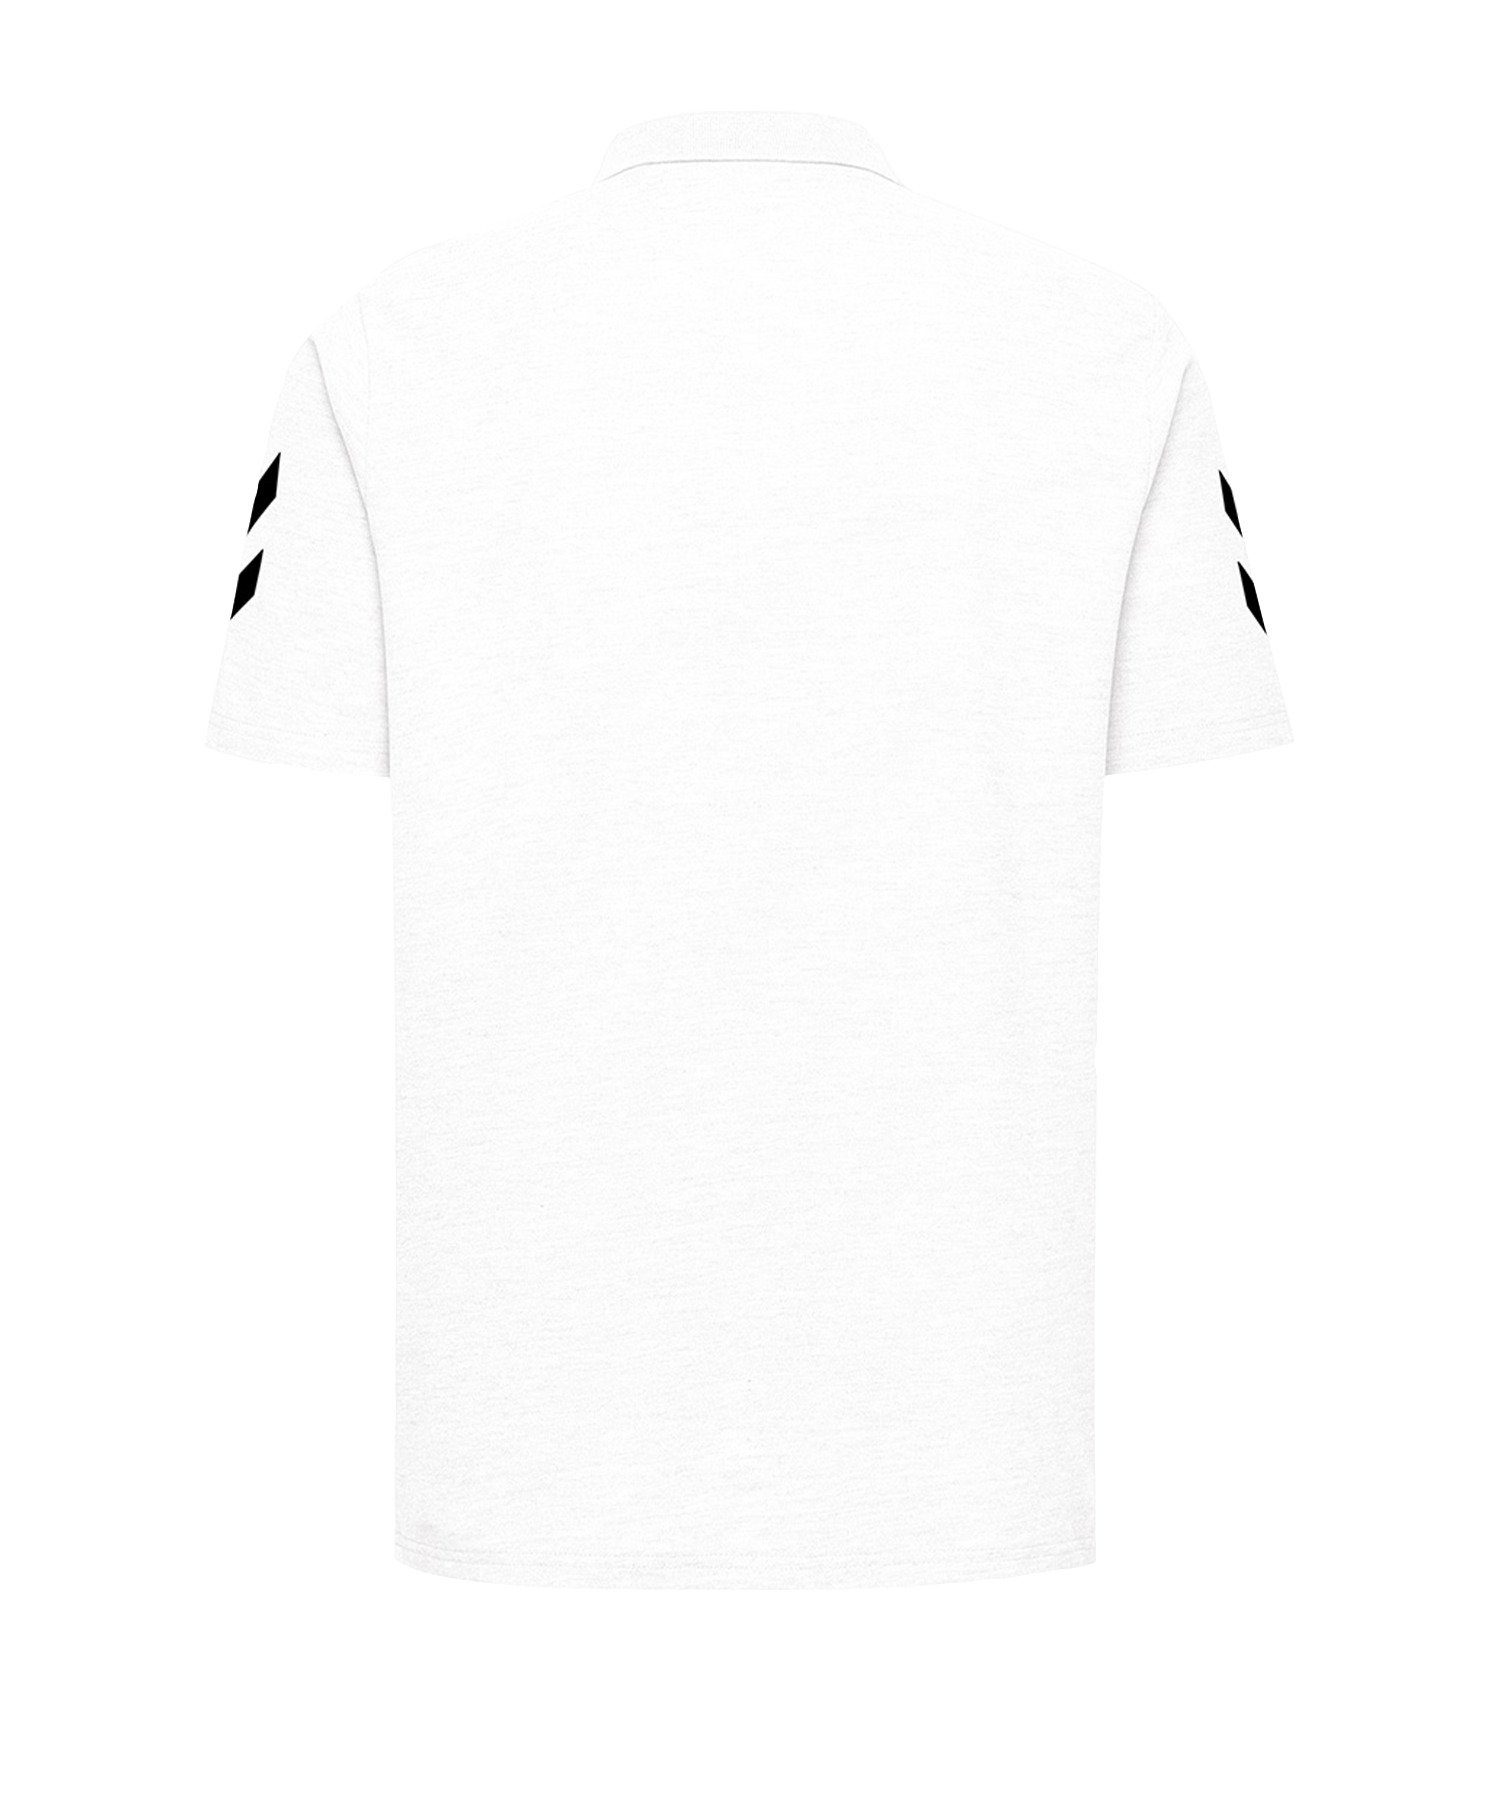 Weiss default T-Shirt hummel Poloshirt Cotton